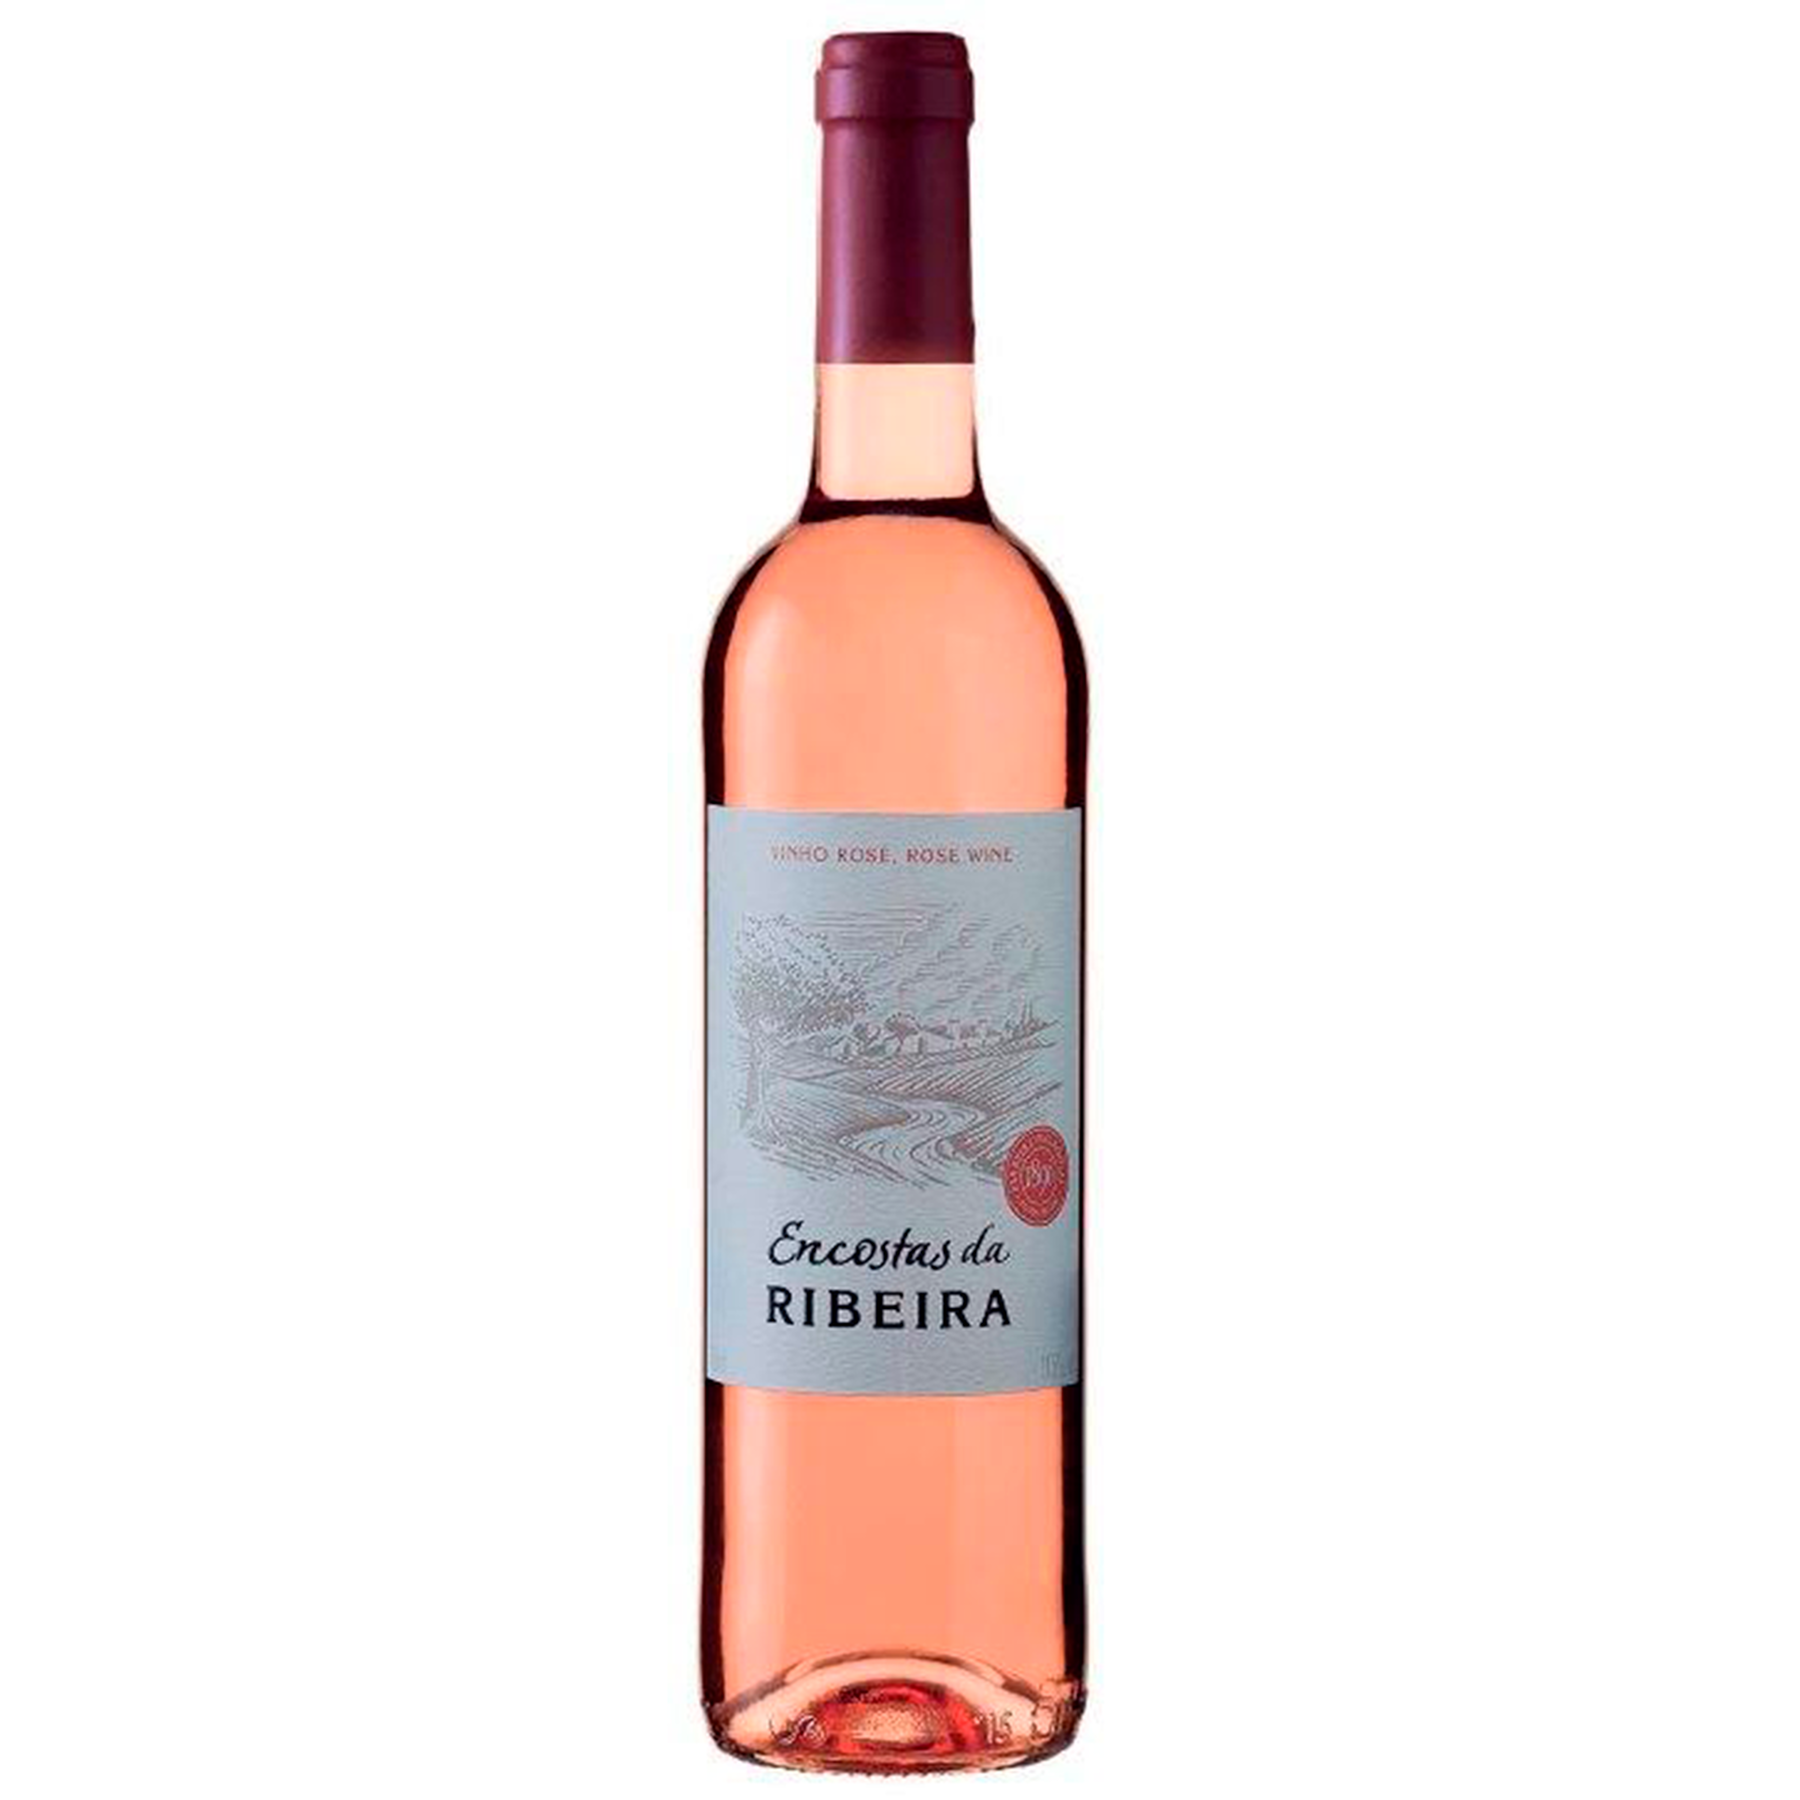 Vinho Rosé Encostas da Ribeira 750ml